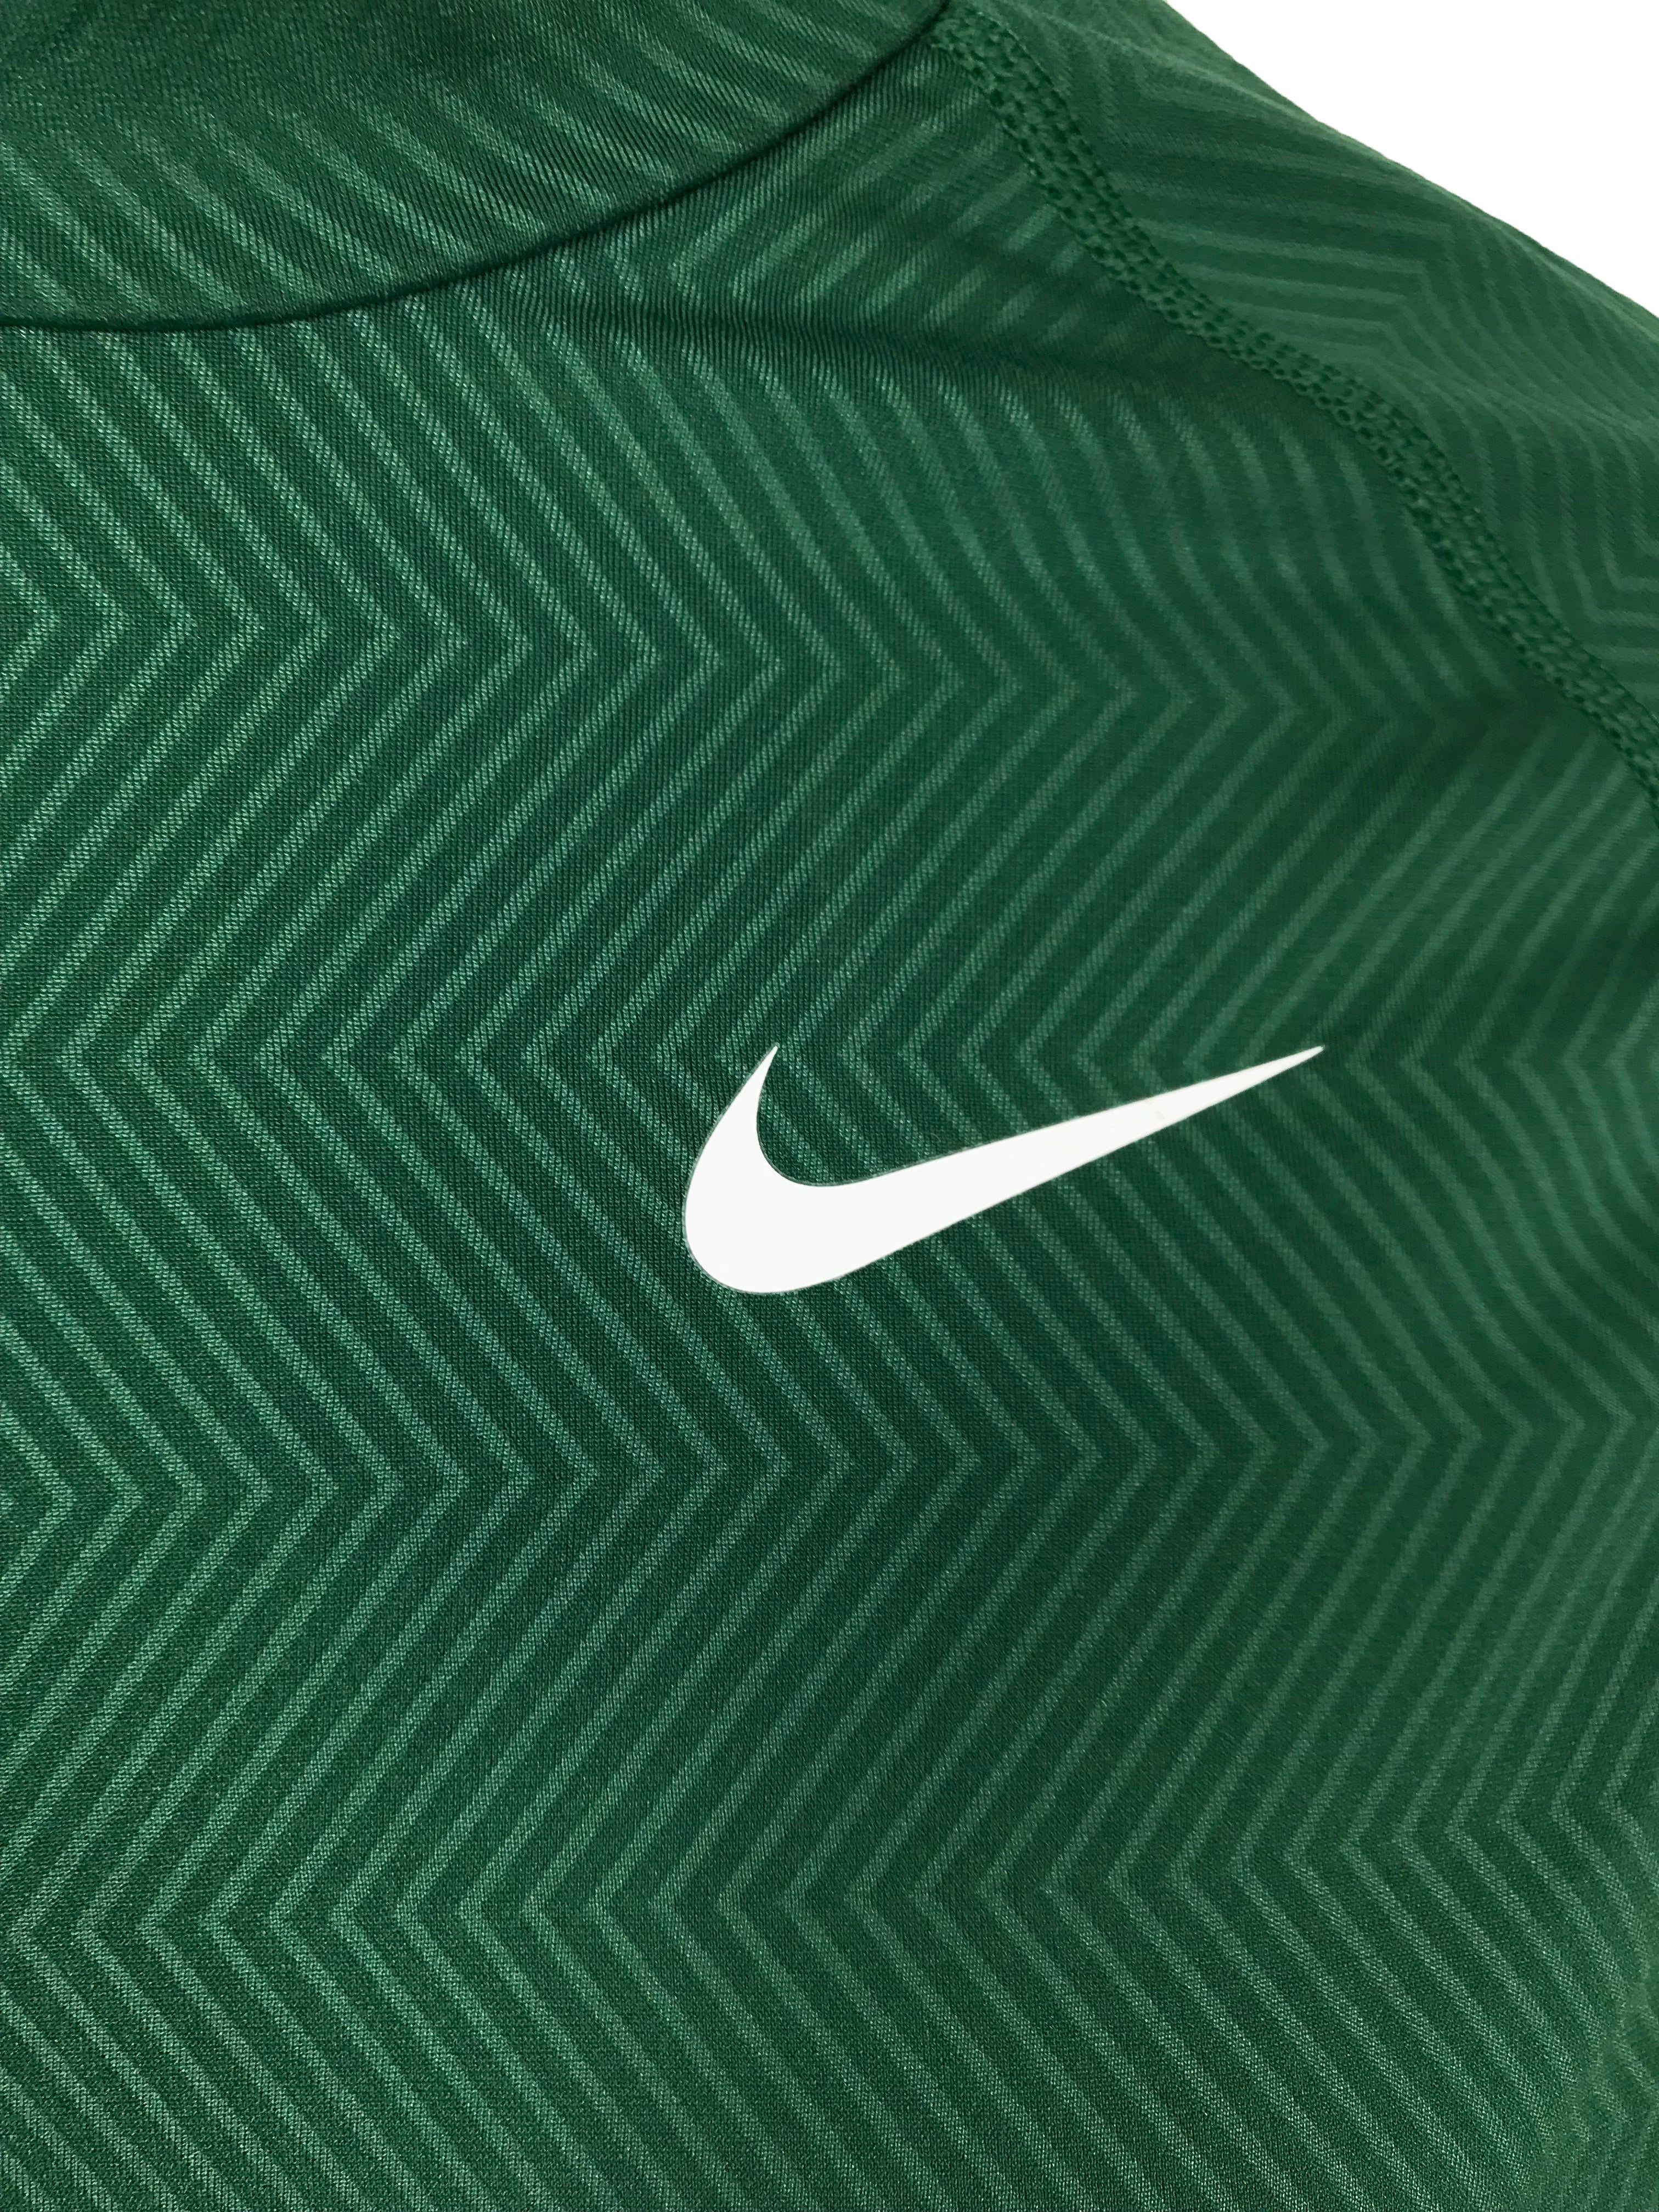 Nike Green Long Sleeve Turtleneck Women's Size S